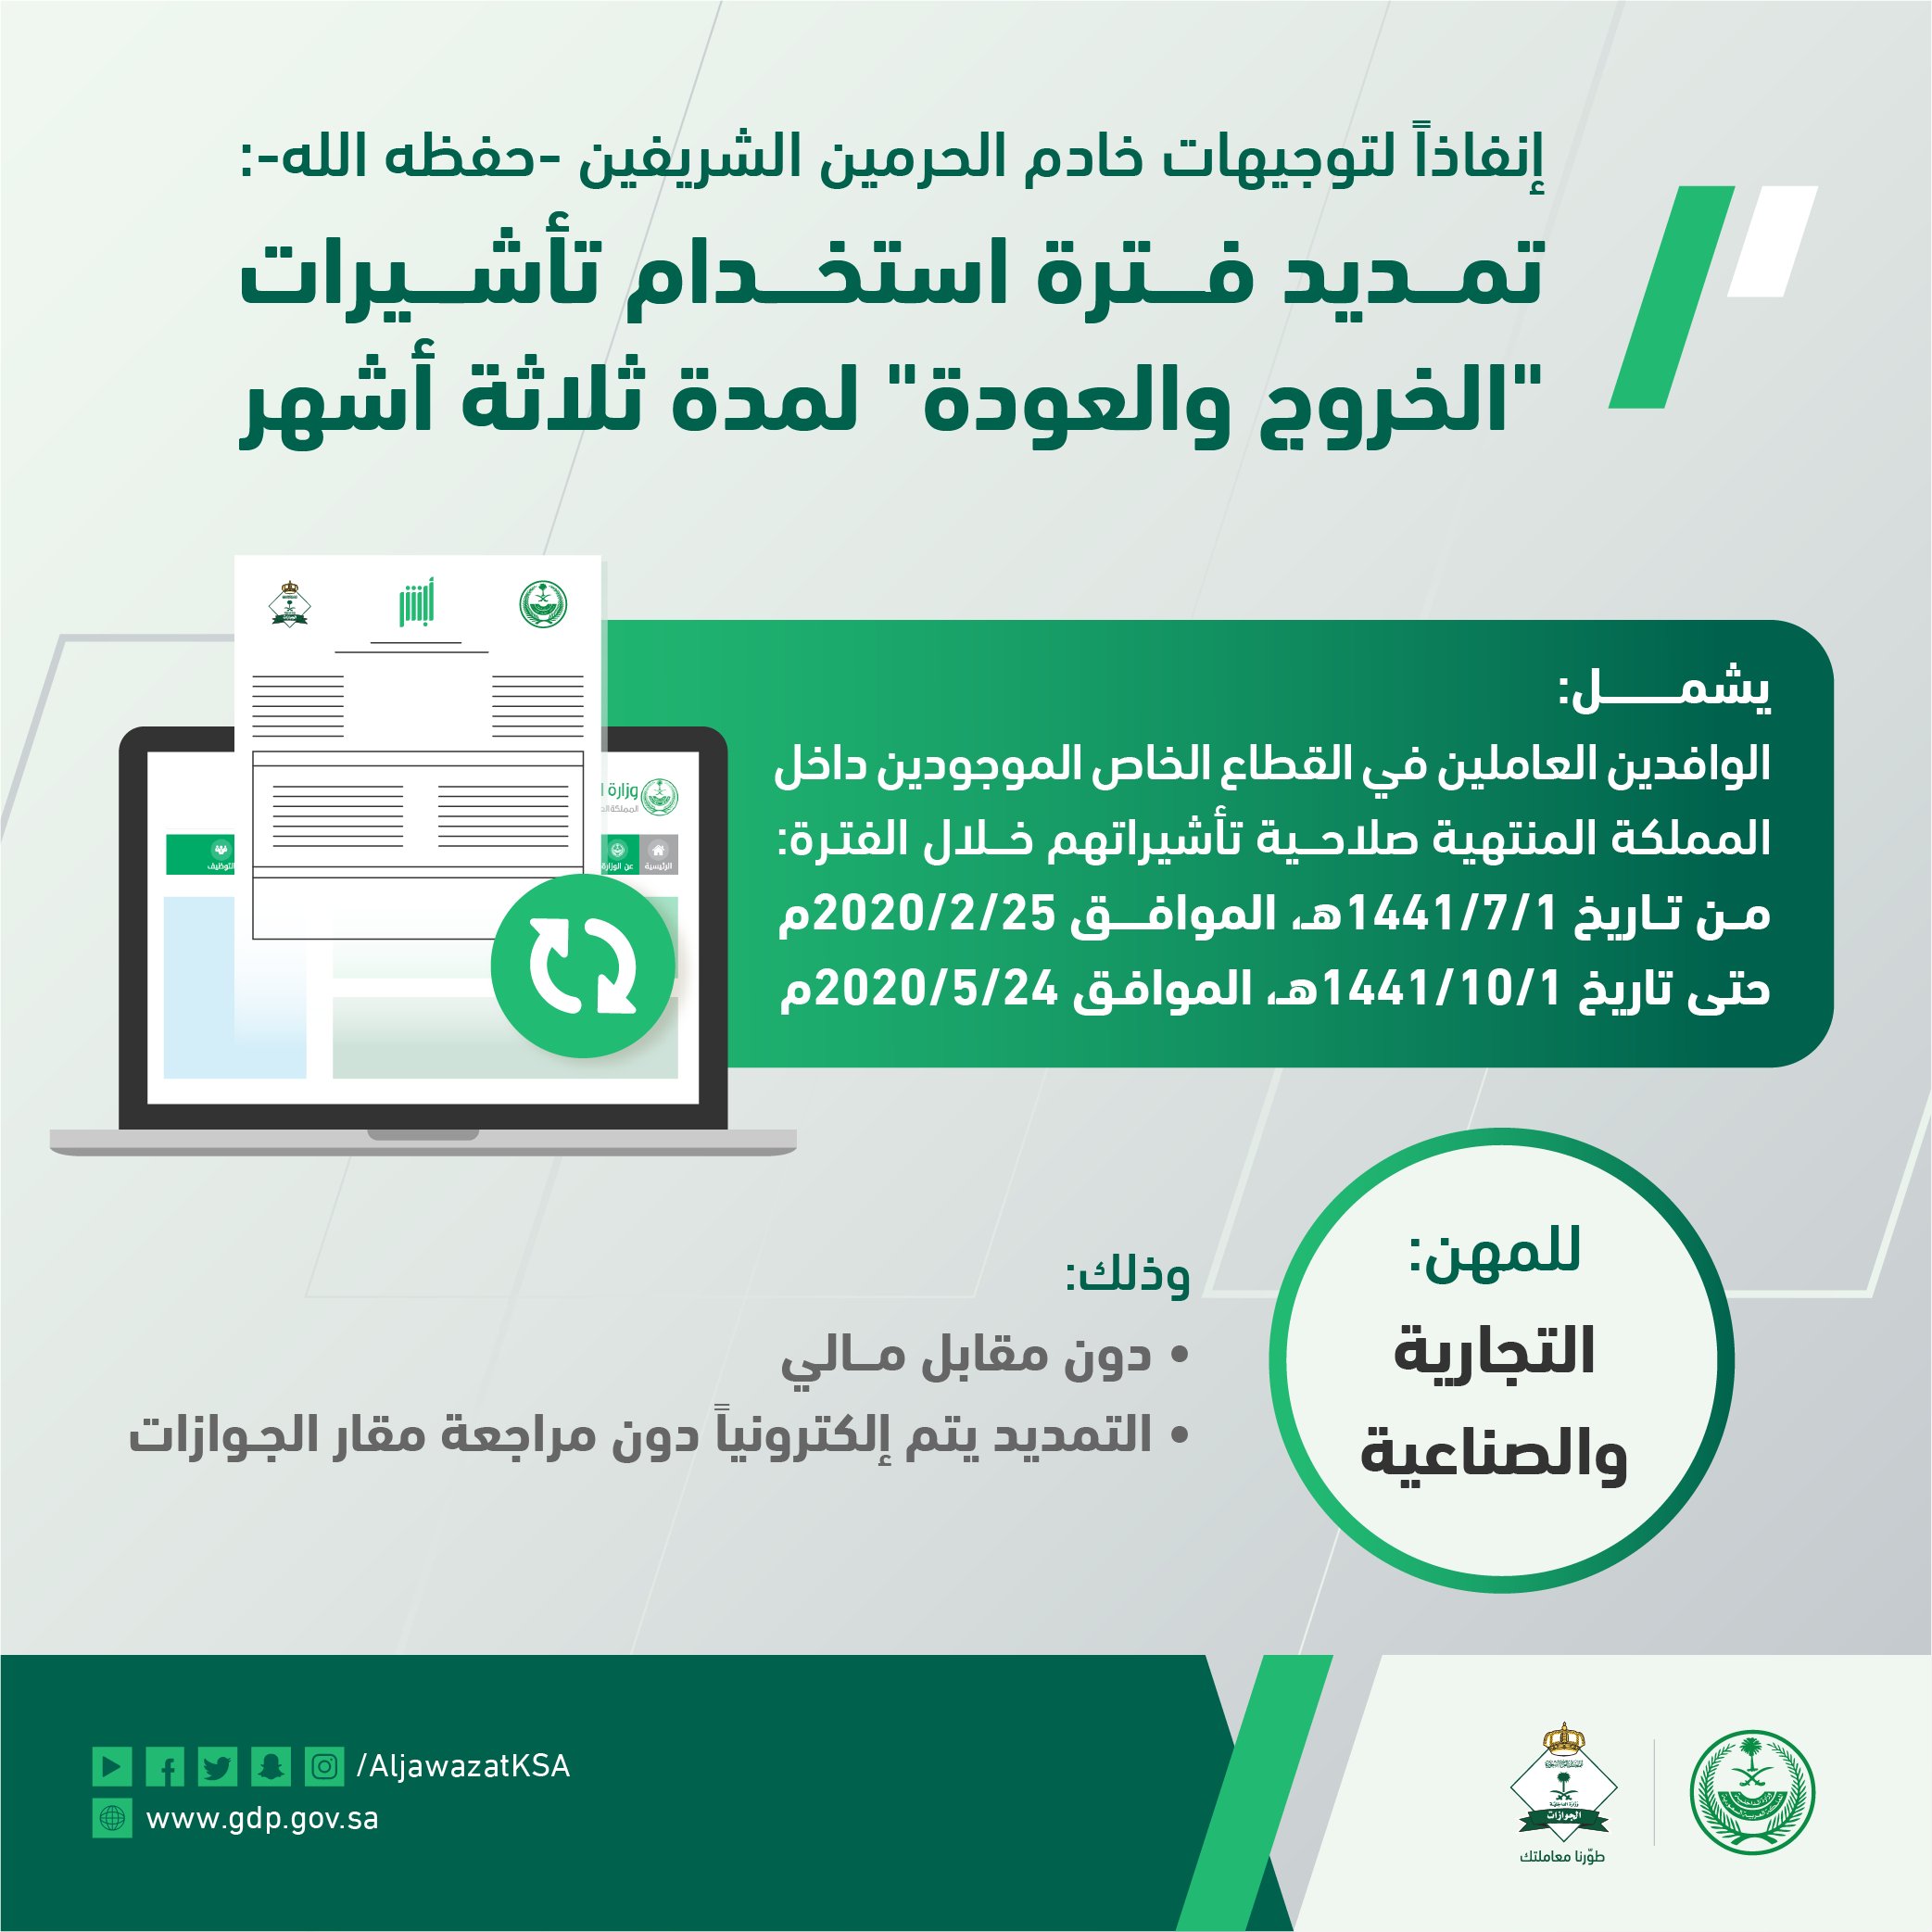 السعودية تمدد تأشيرات الخروج والعودة للوافدين 3 أشهر إضافية مجانا معلومات مباشر